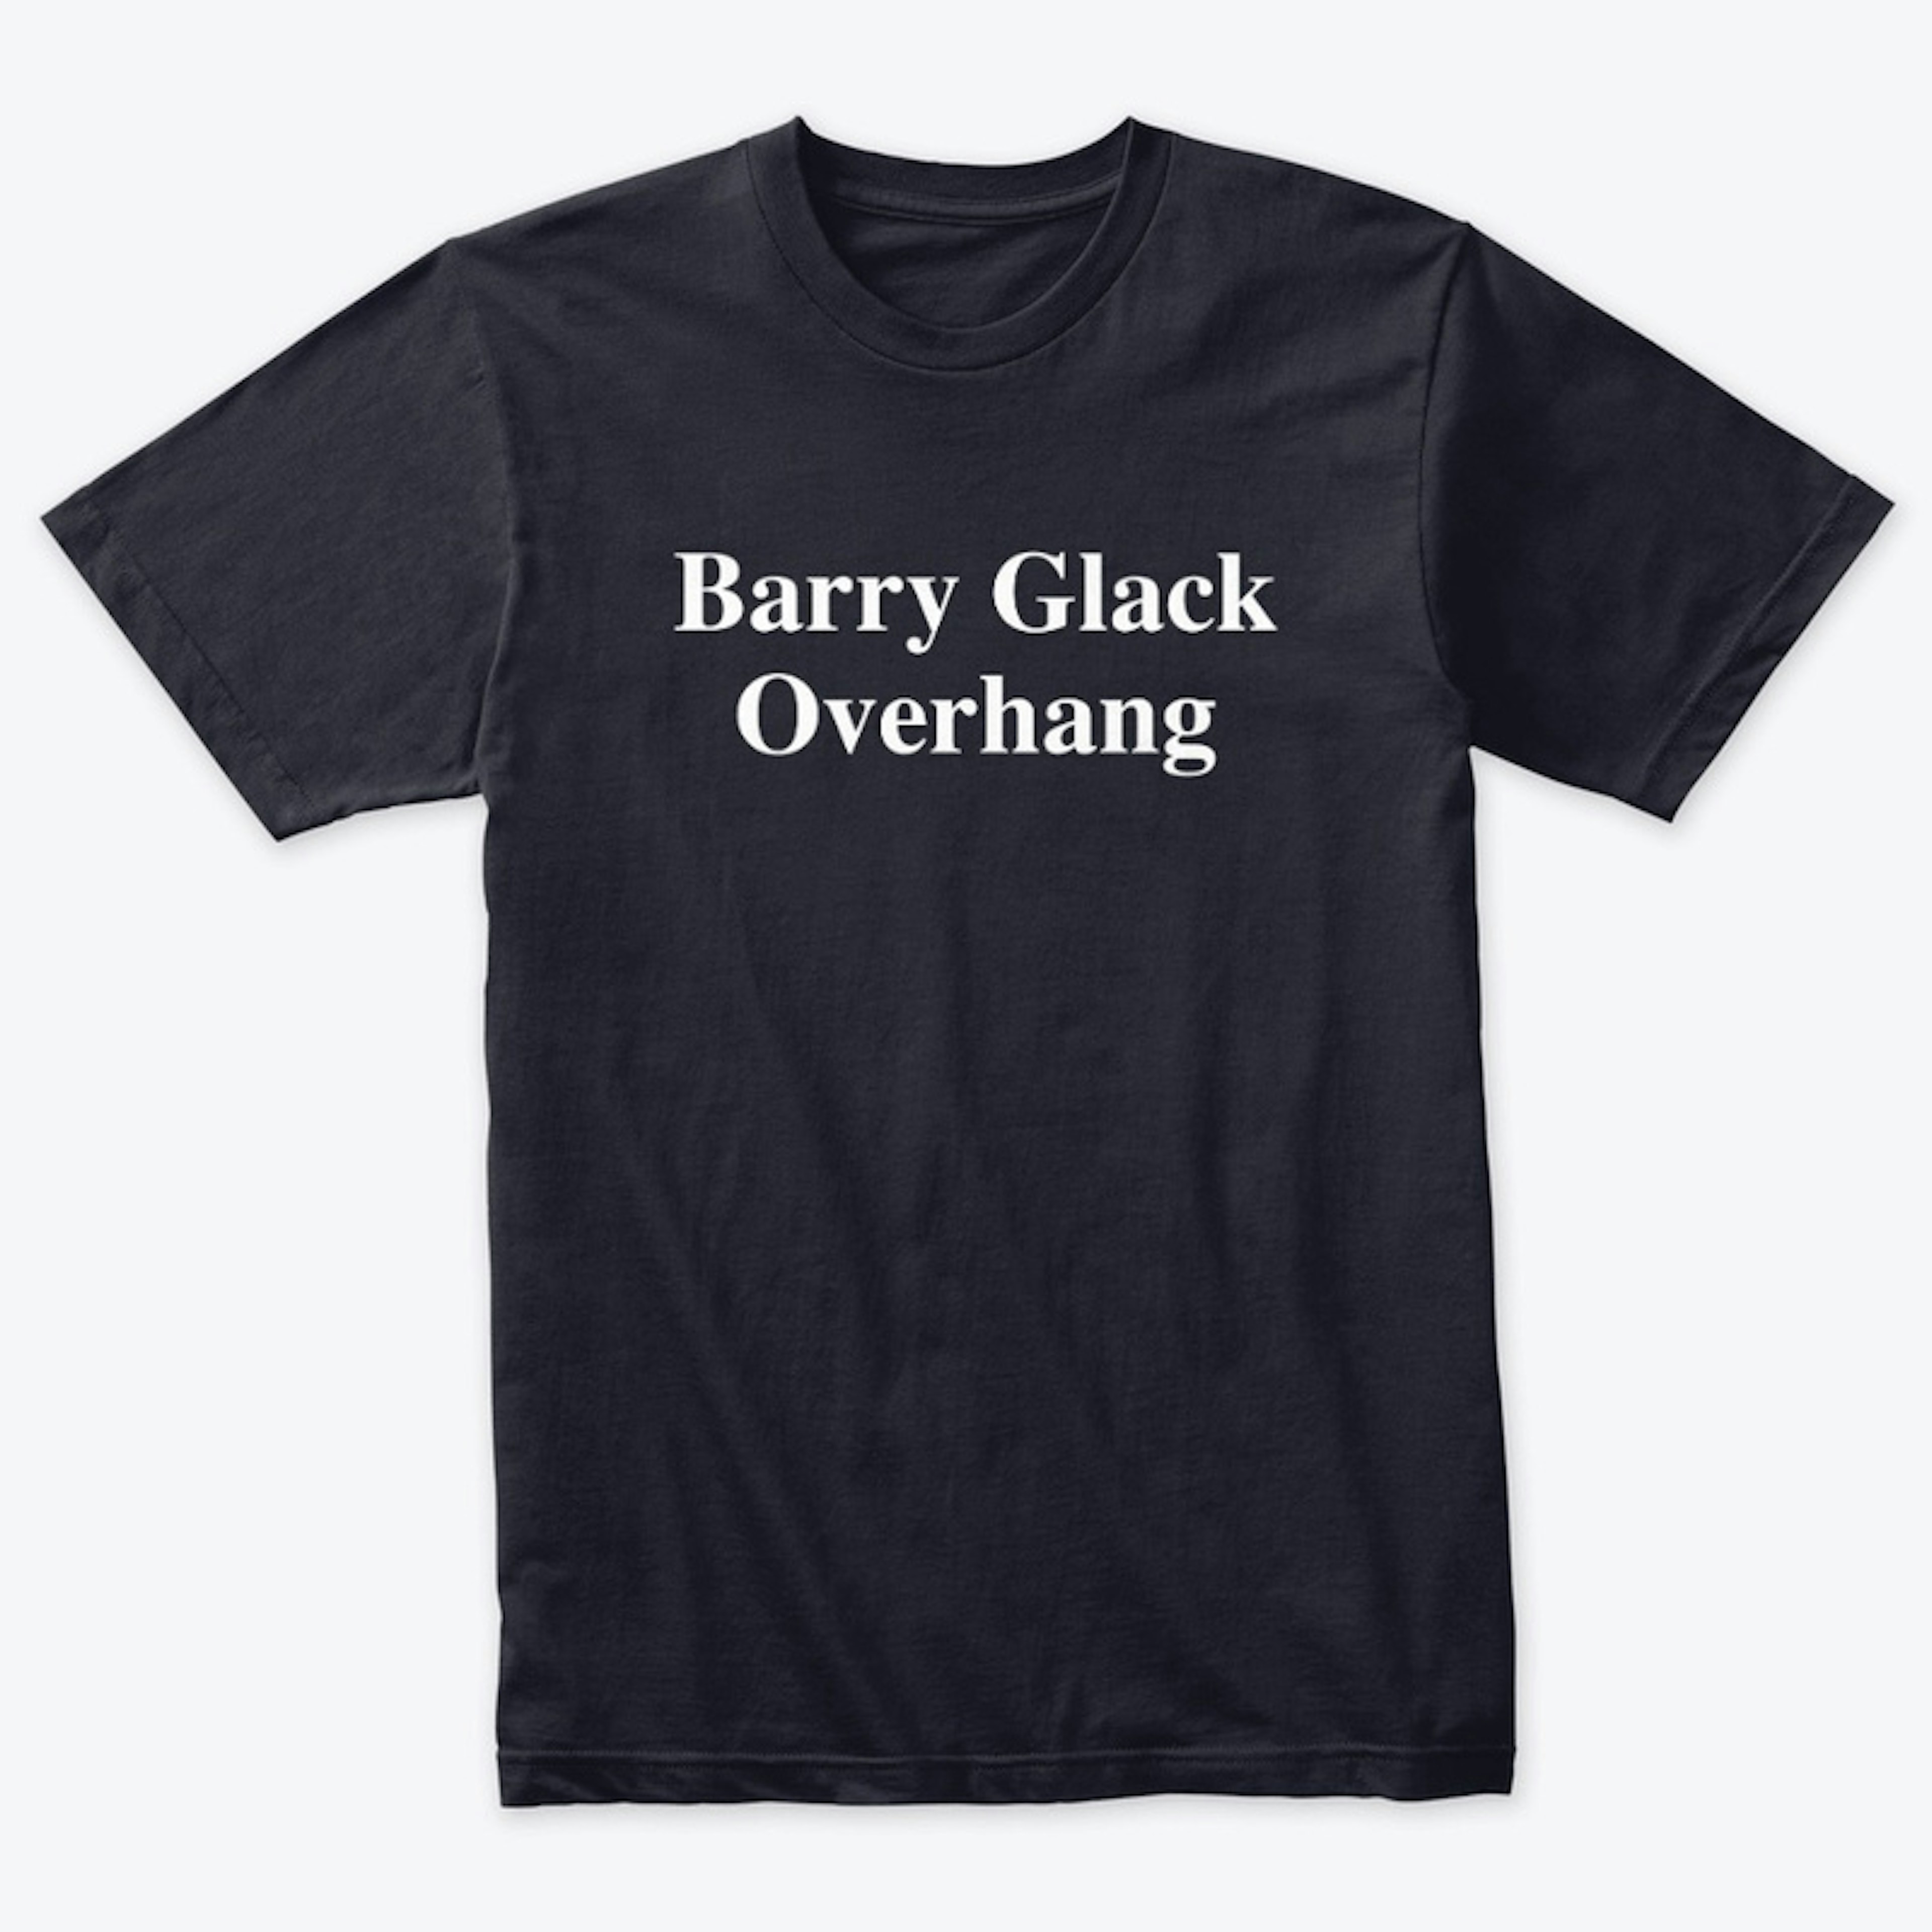 Barry Glack Overhang